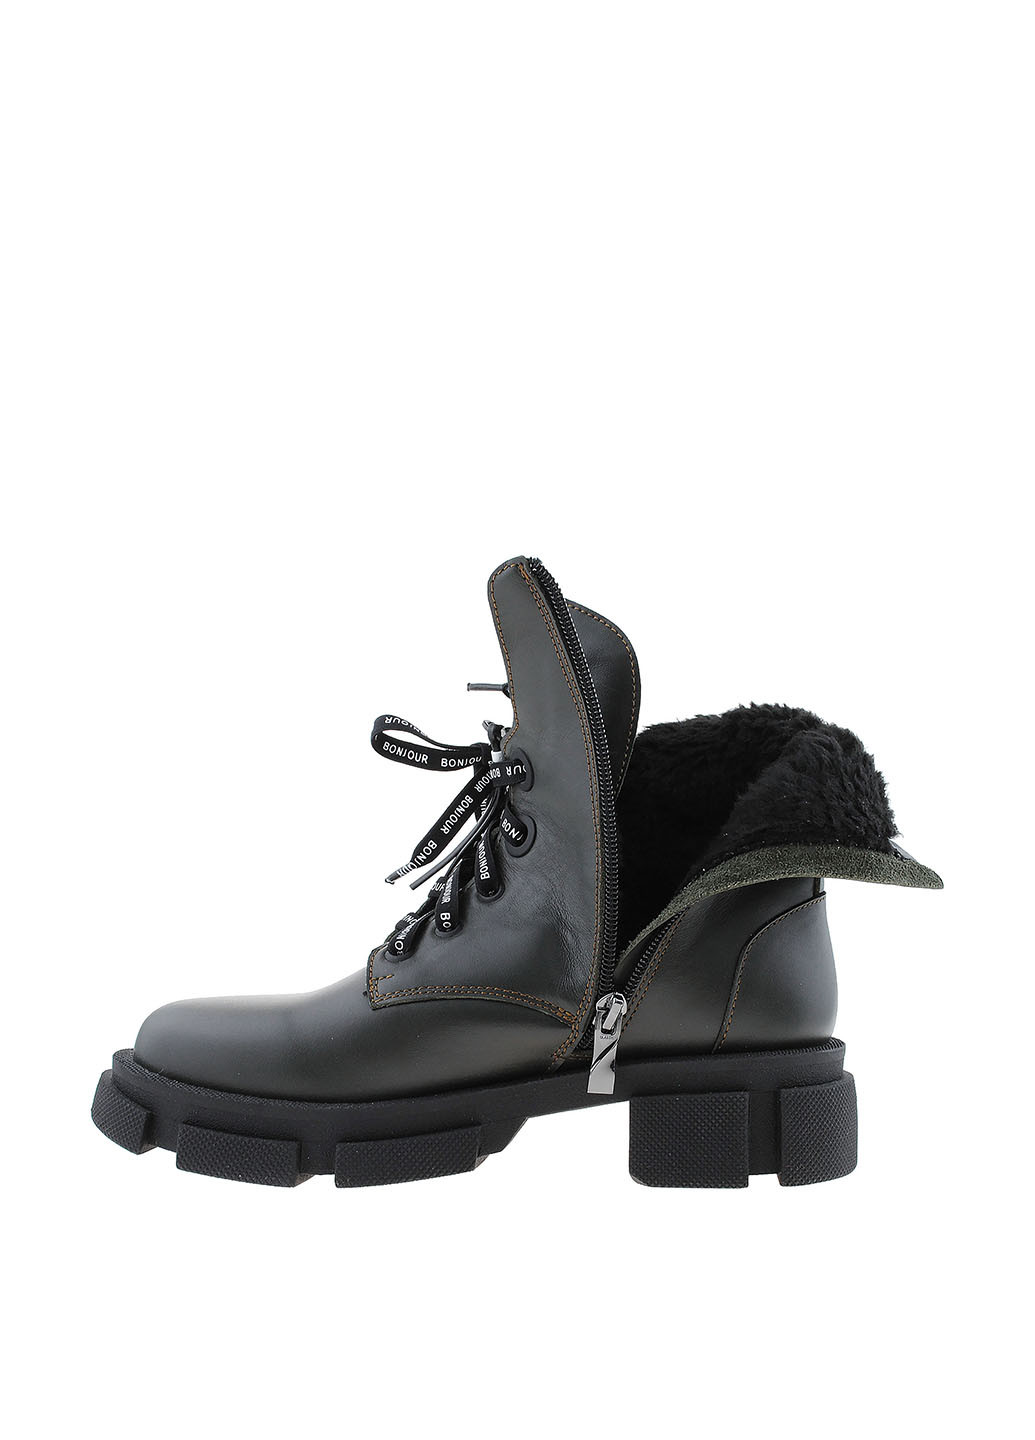 Зимние ботинки берцы Teona с аппликацией, со шнуровкой, на тракторной подошве